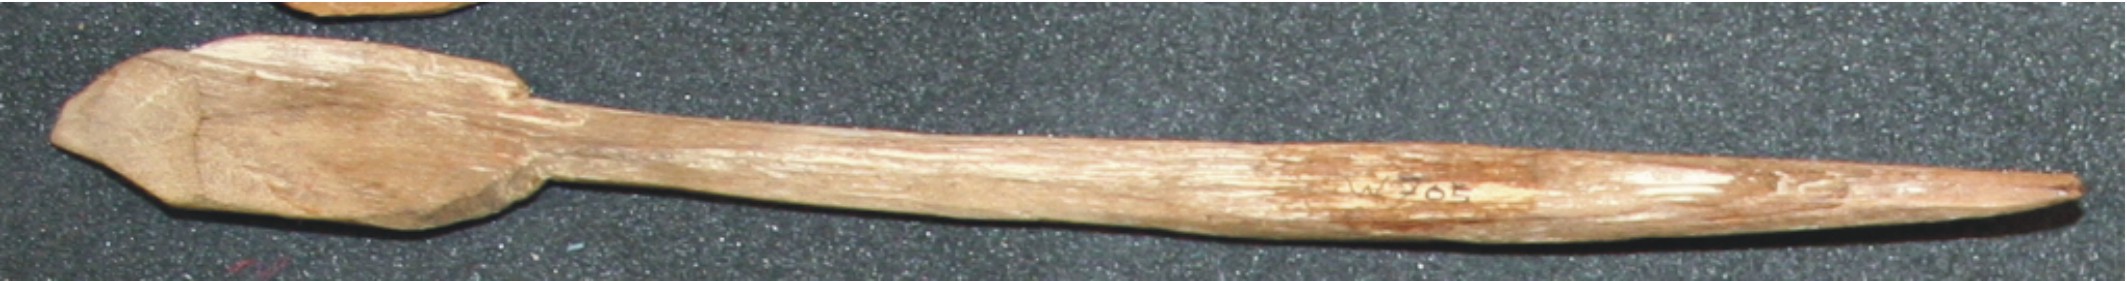 Image for: Model oar